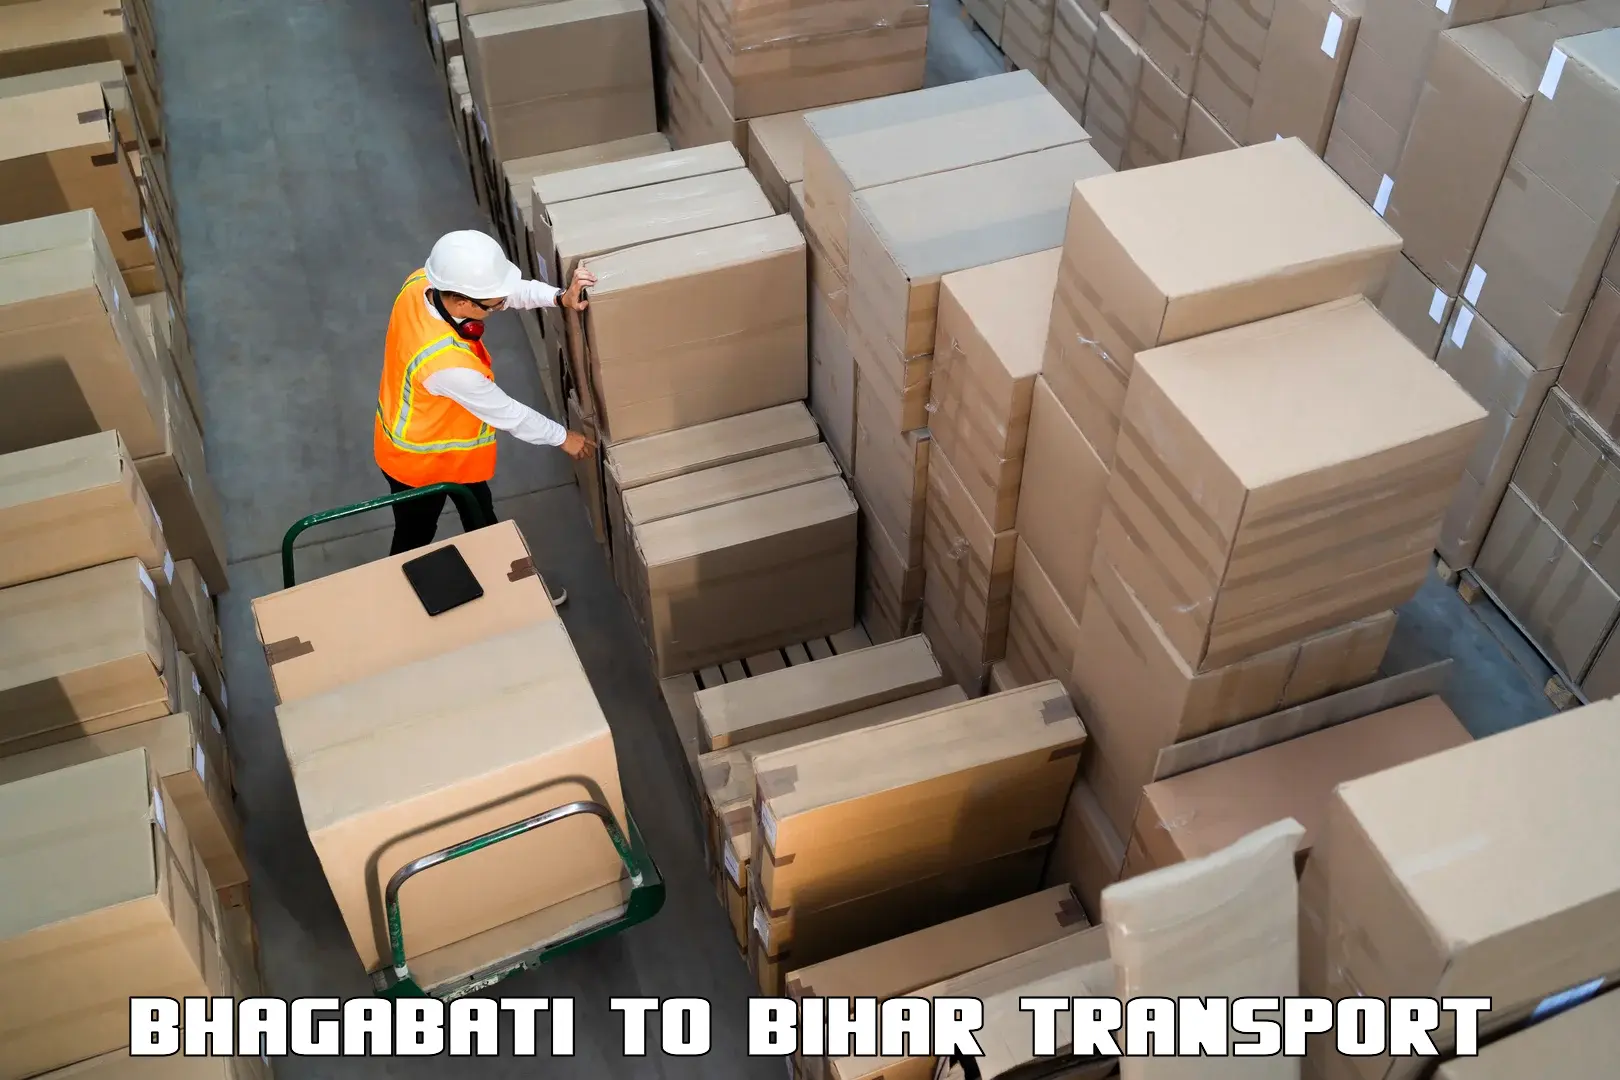 Bike shipping service Bhagabati to Sheohar